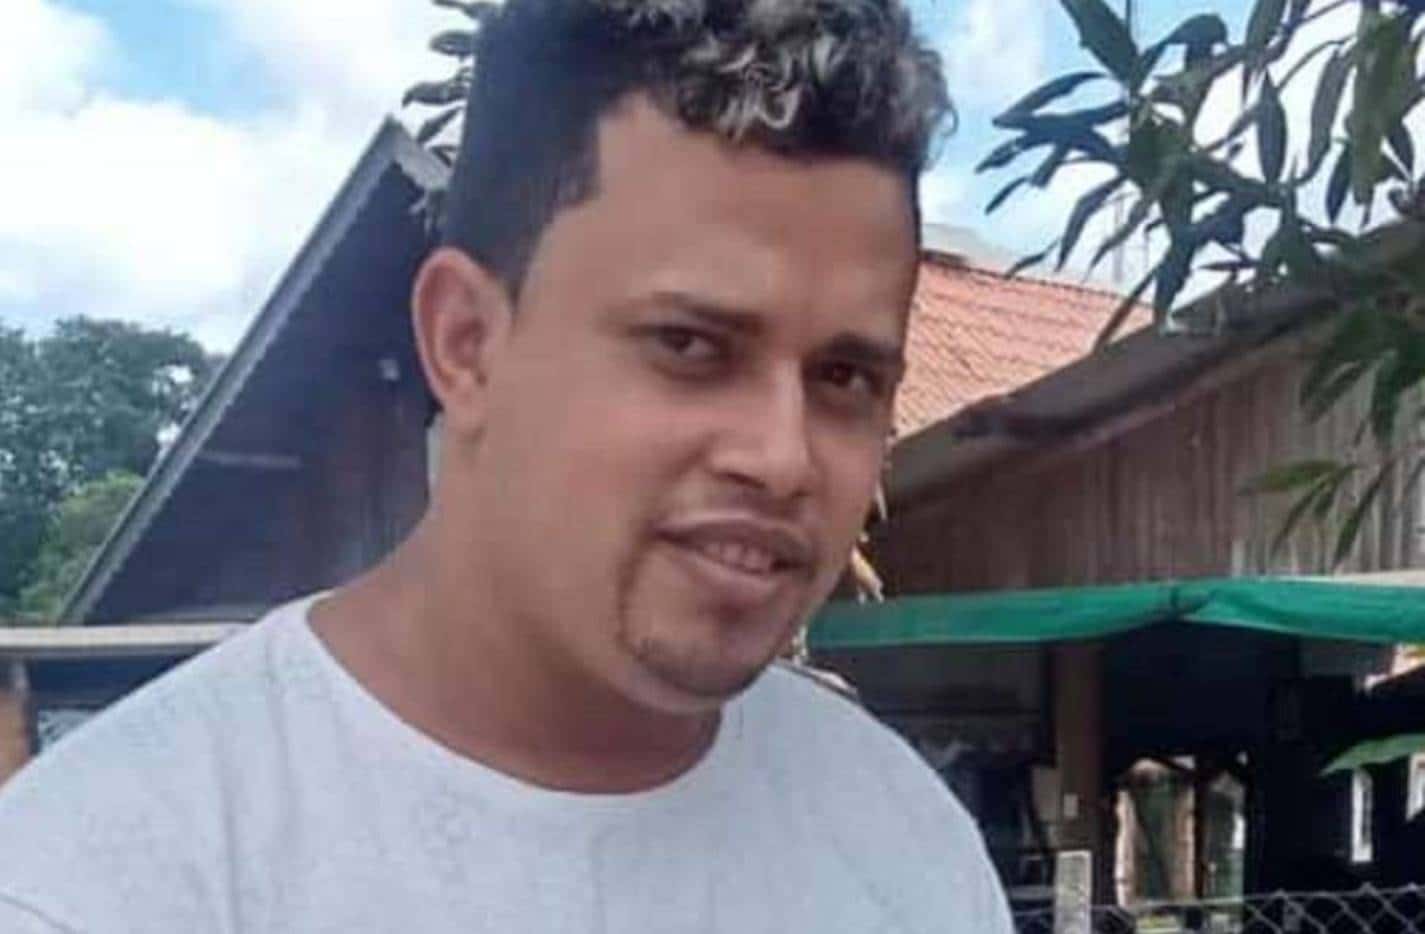 Moradora de Simões Filho pede ajuda para encontrar irmão desaparecido em São Paulo